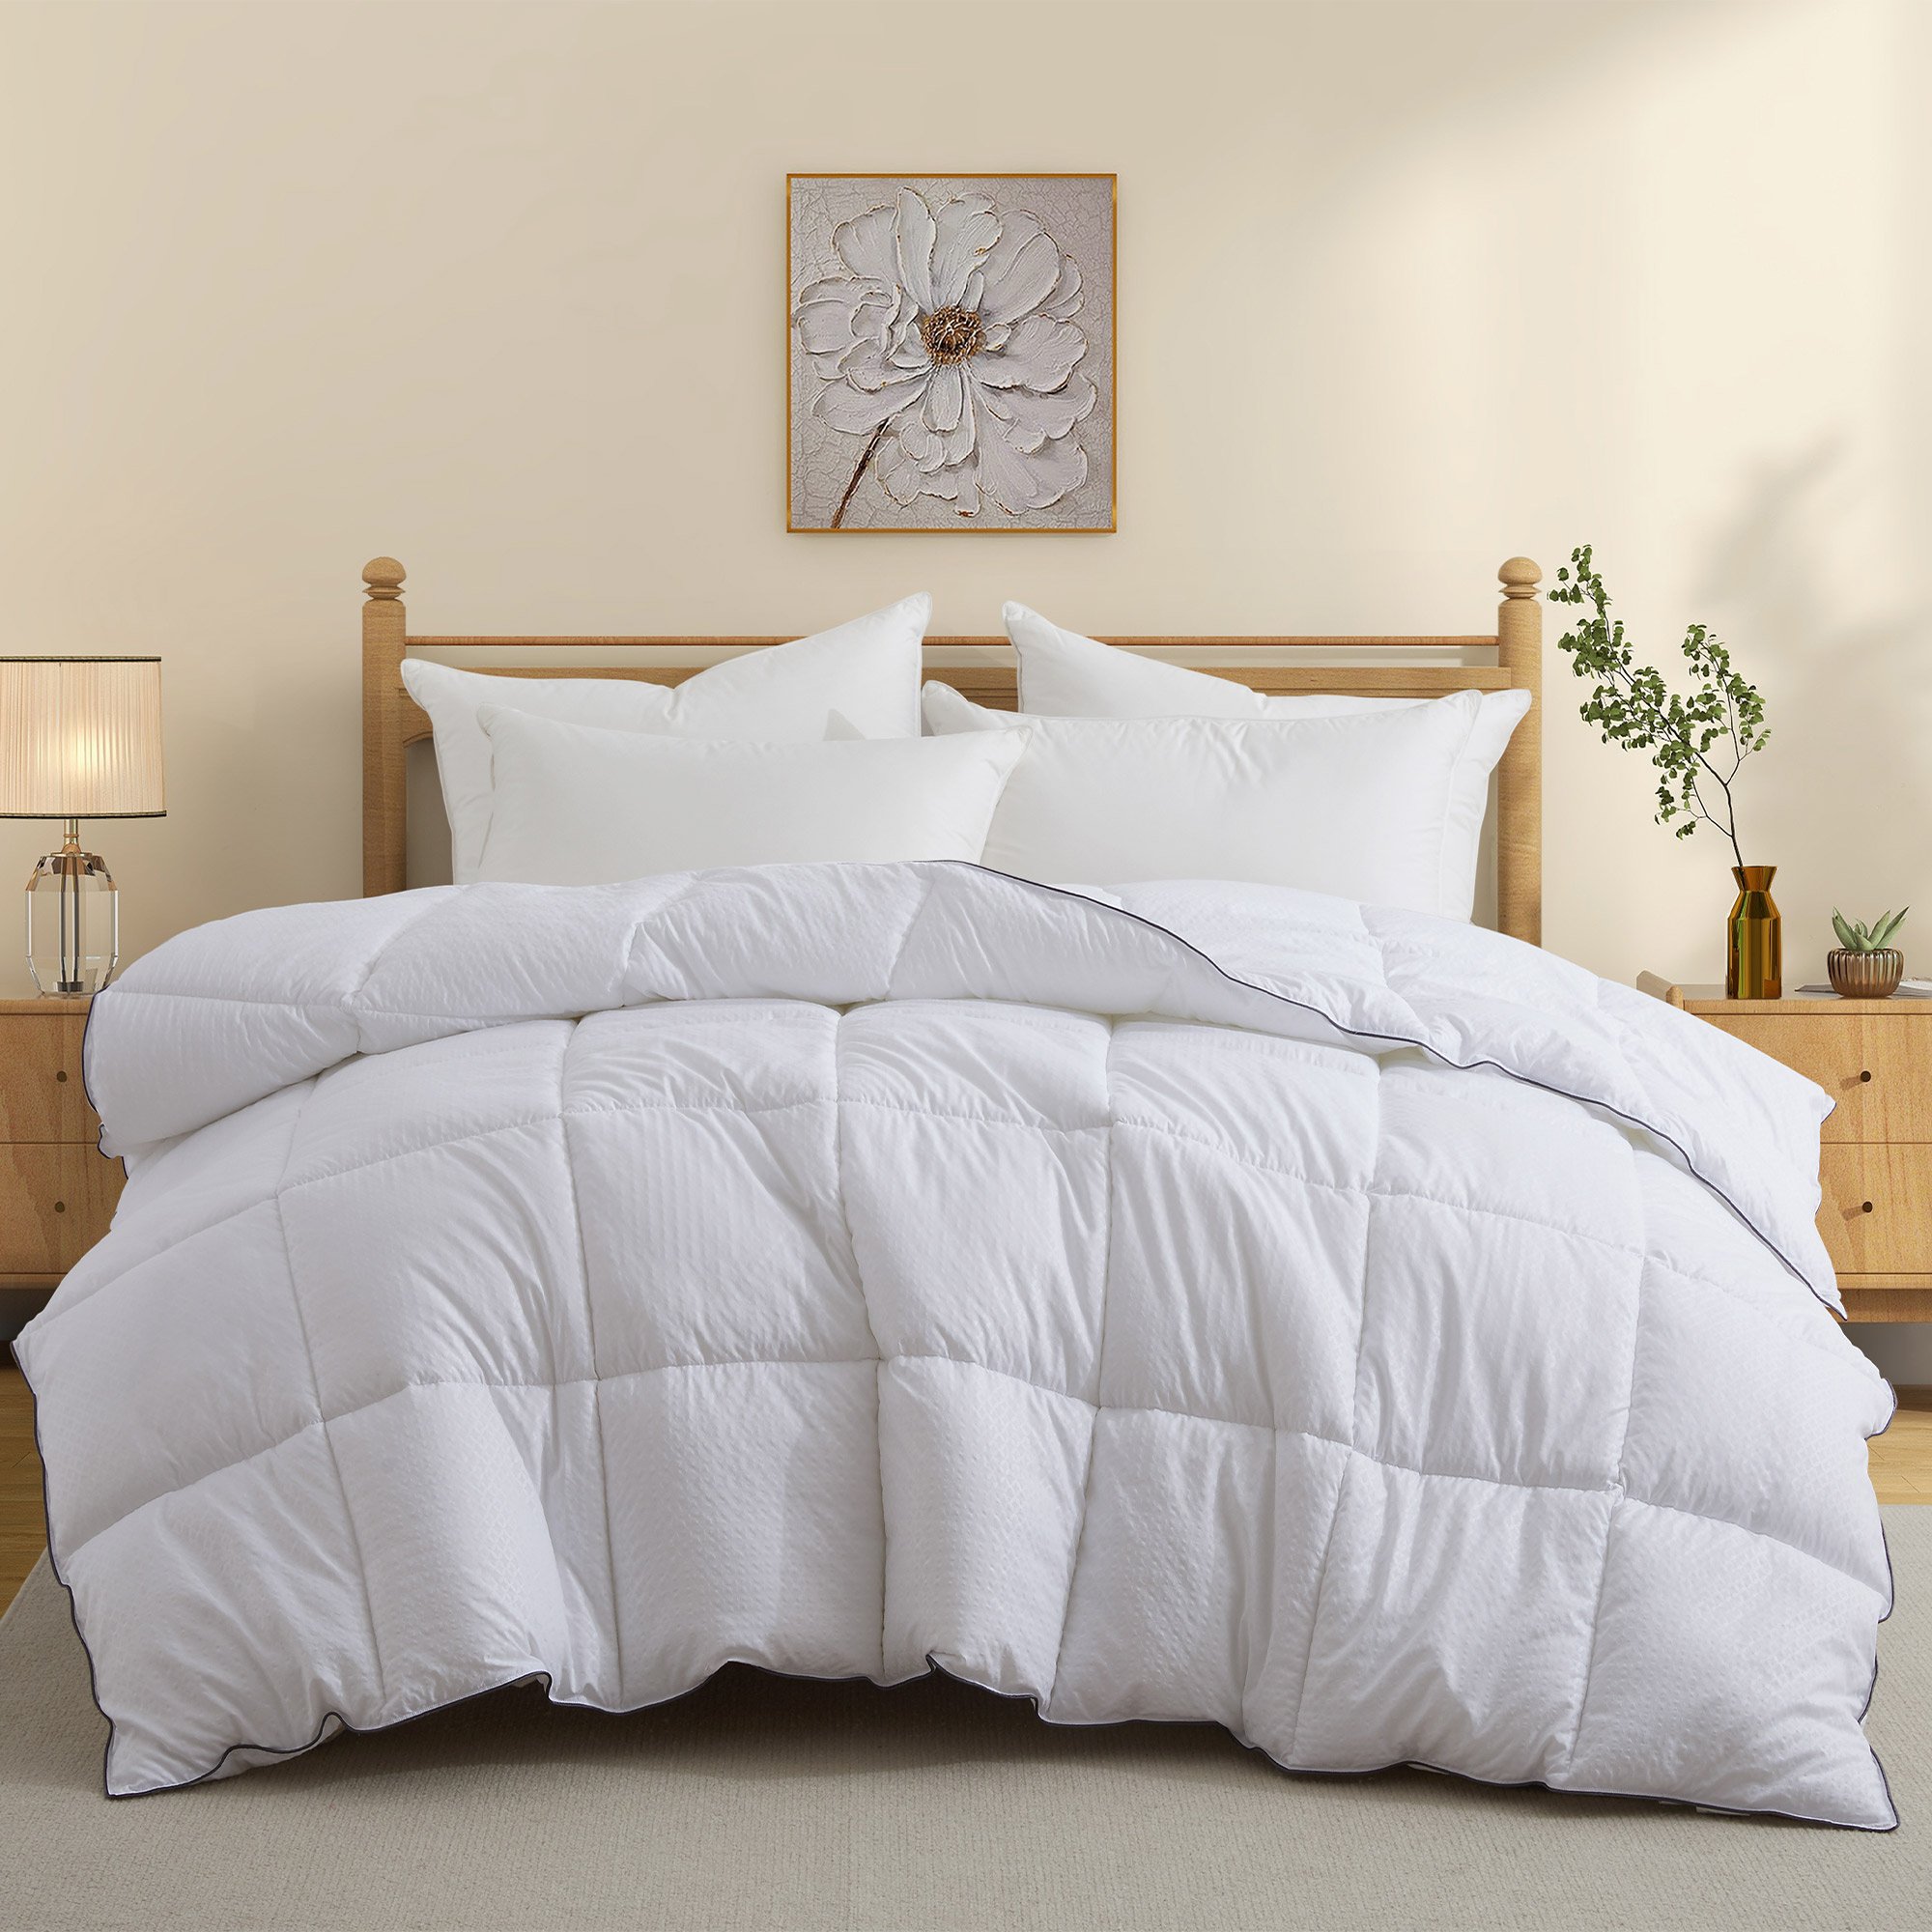 All Seasons Down Alternative Comforter - White, Full/Queen